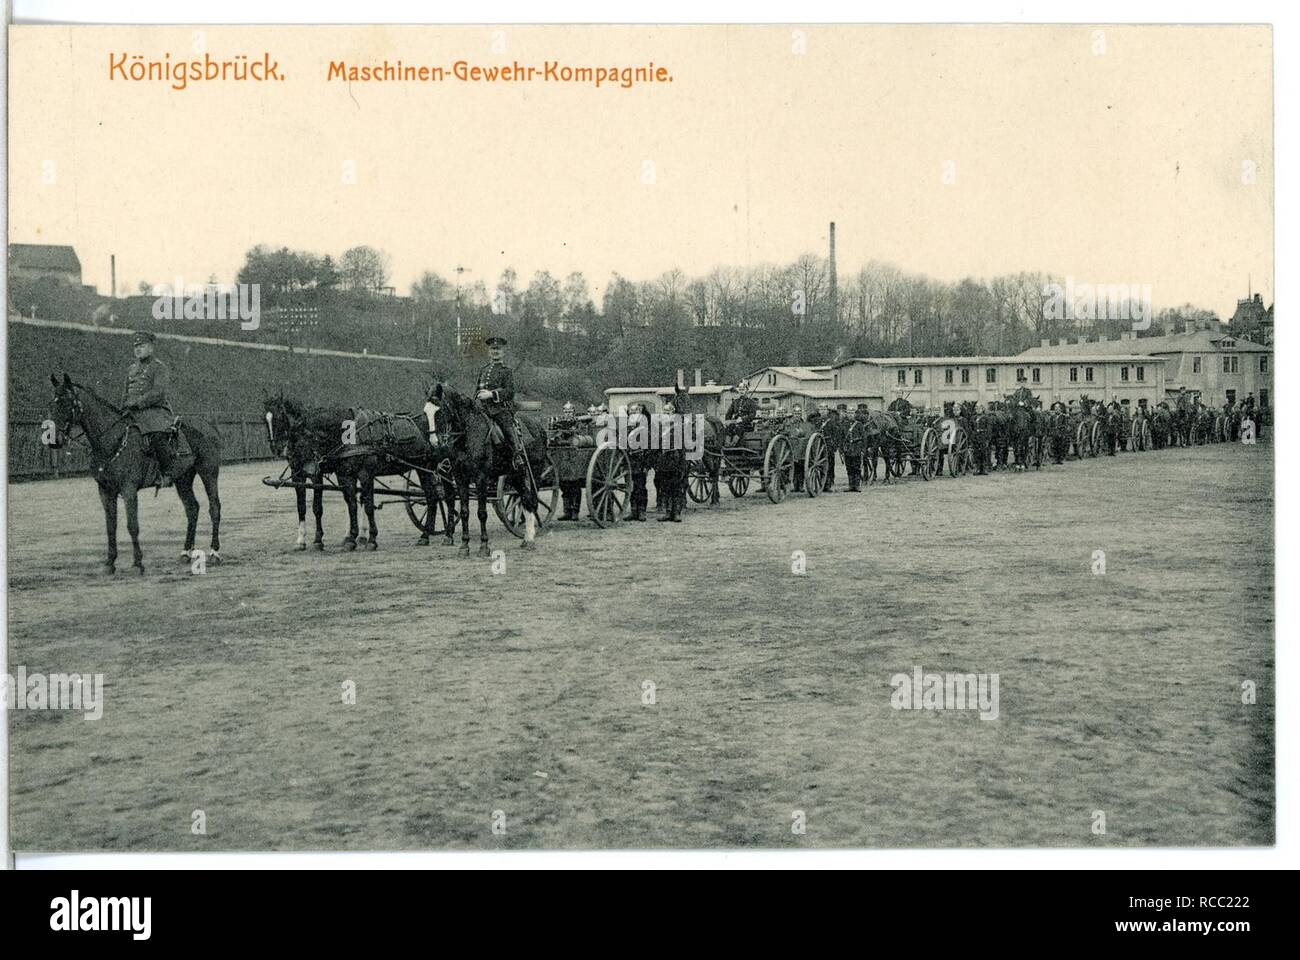 11994-Döbeln-1910-11. Infanterie-Regiment Nr. 139 Maschinengewehr-Kompagnie- Stock Photo